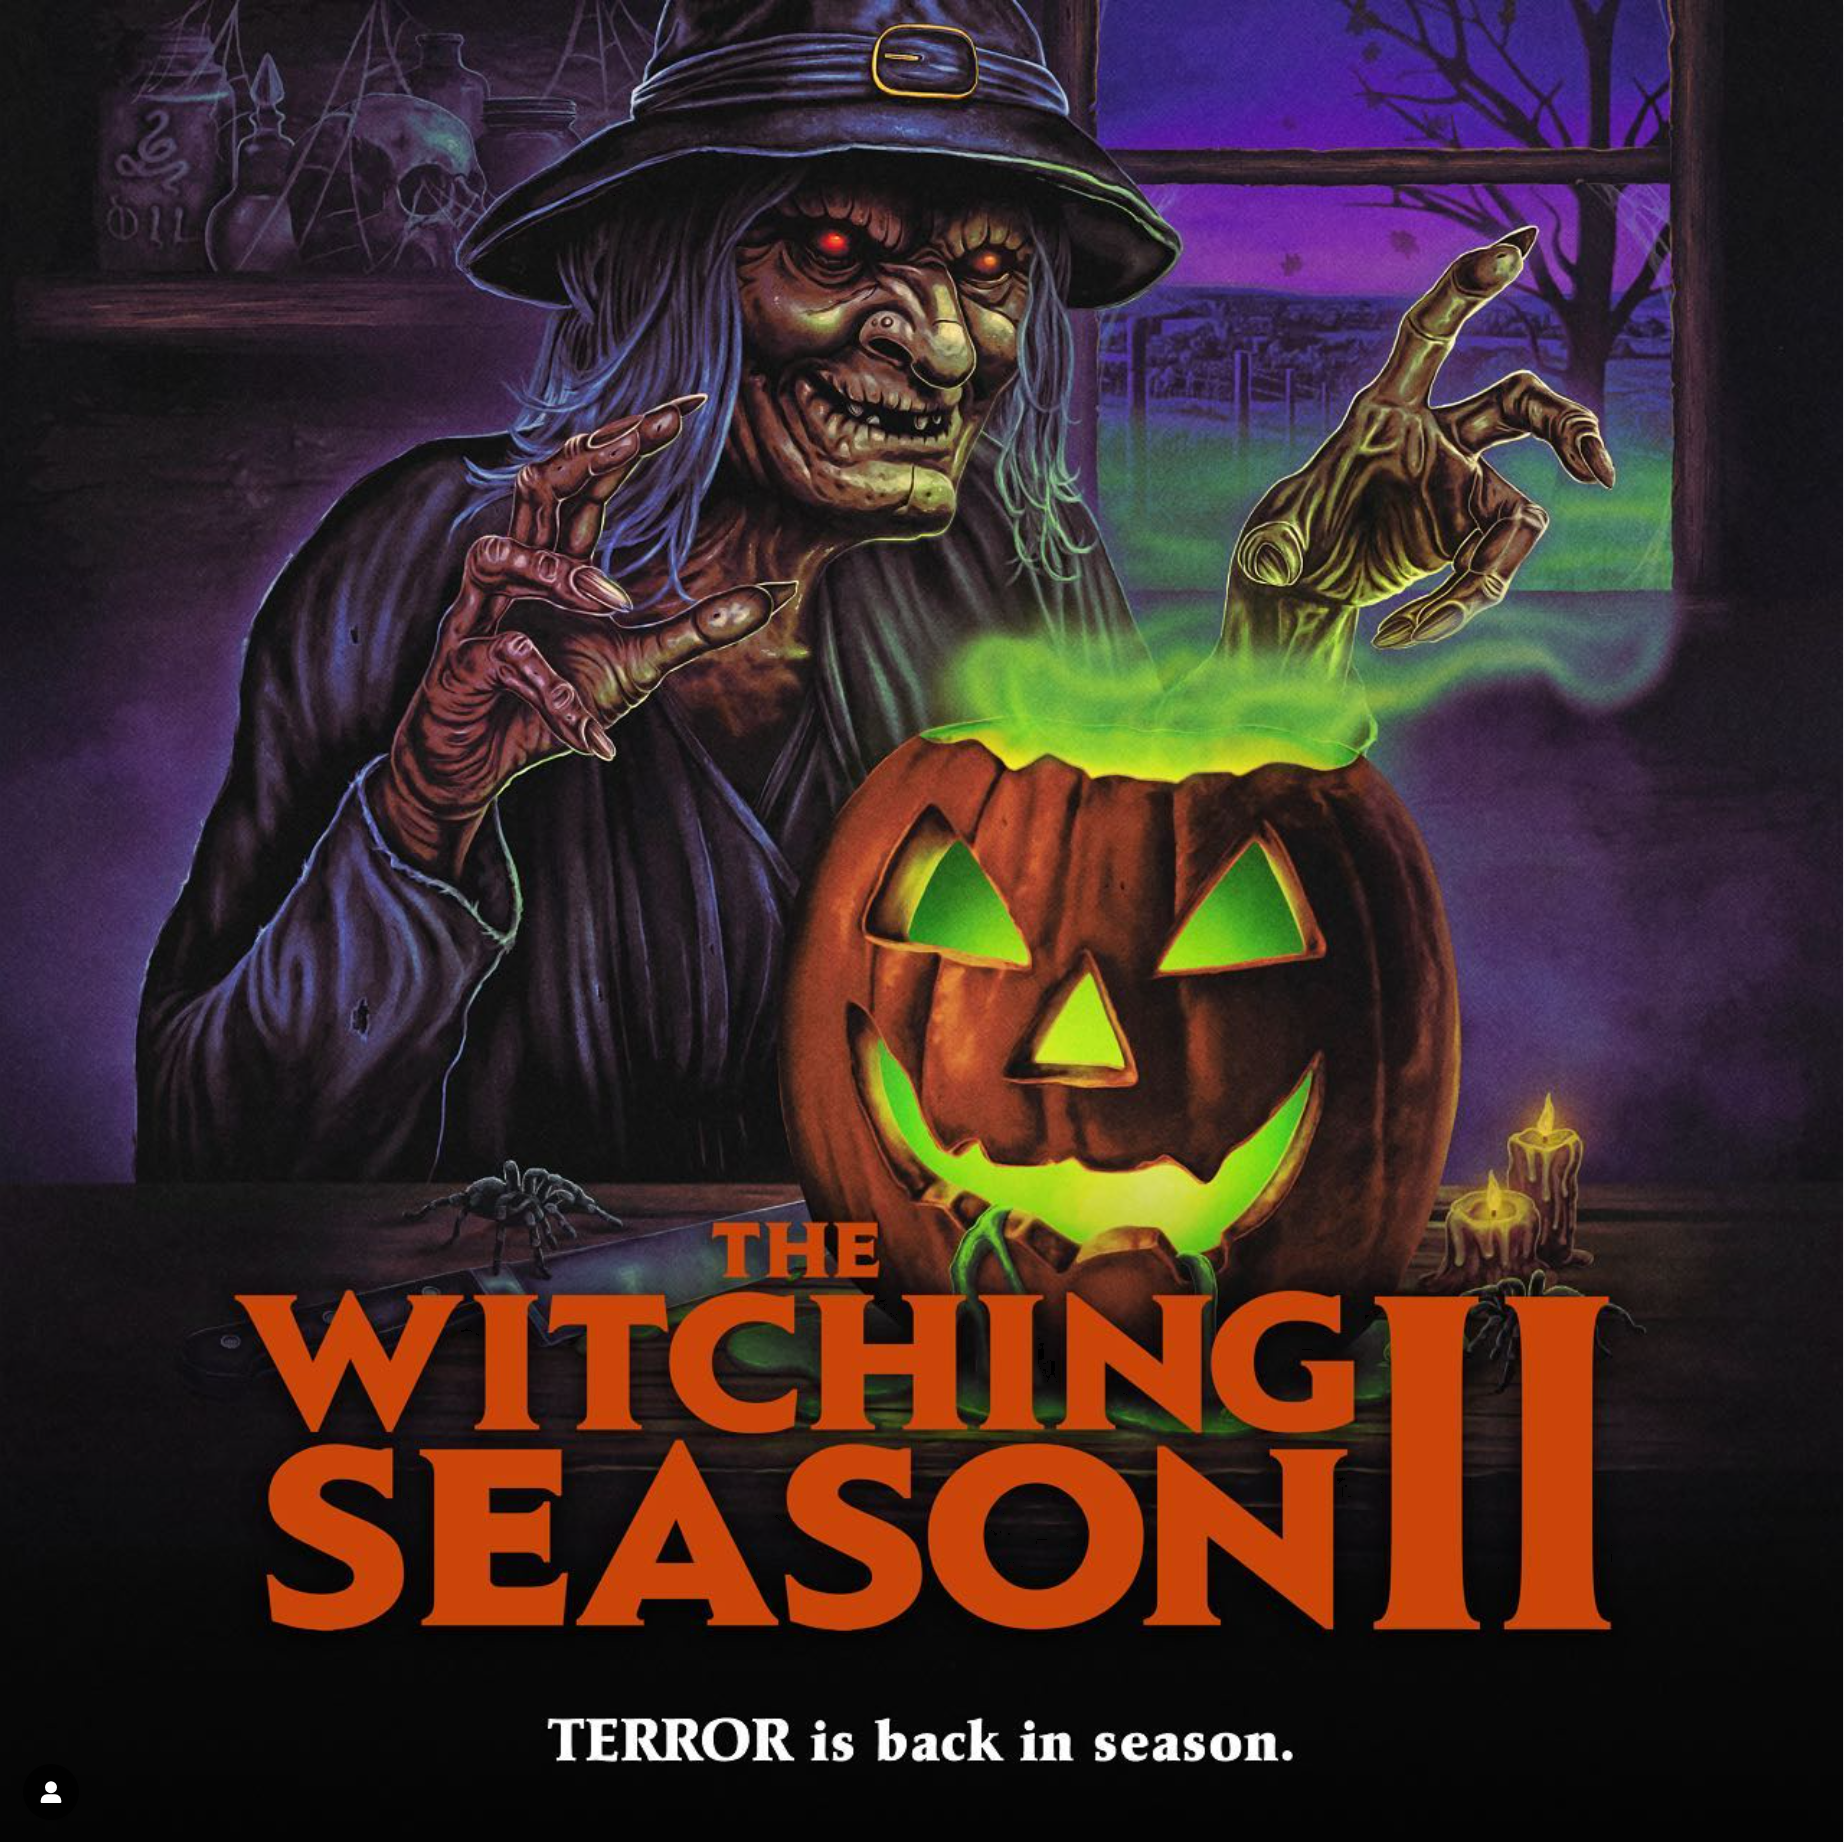 Witching Season II